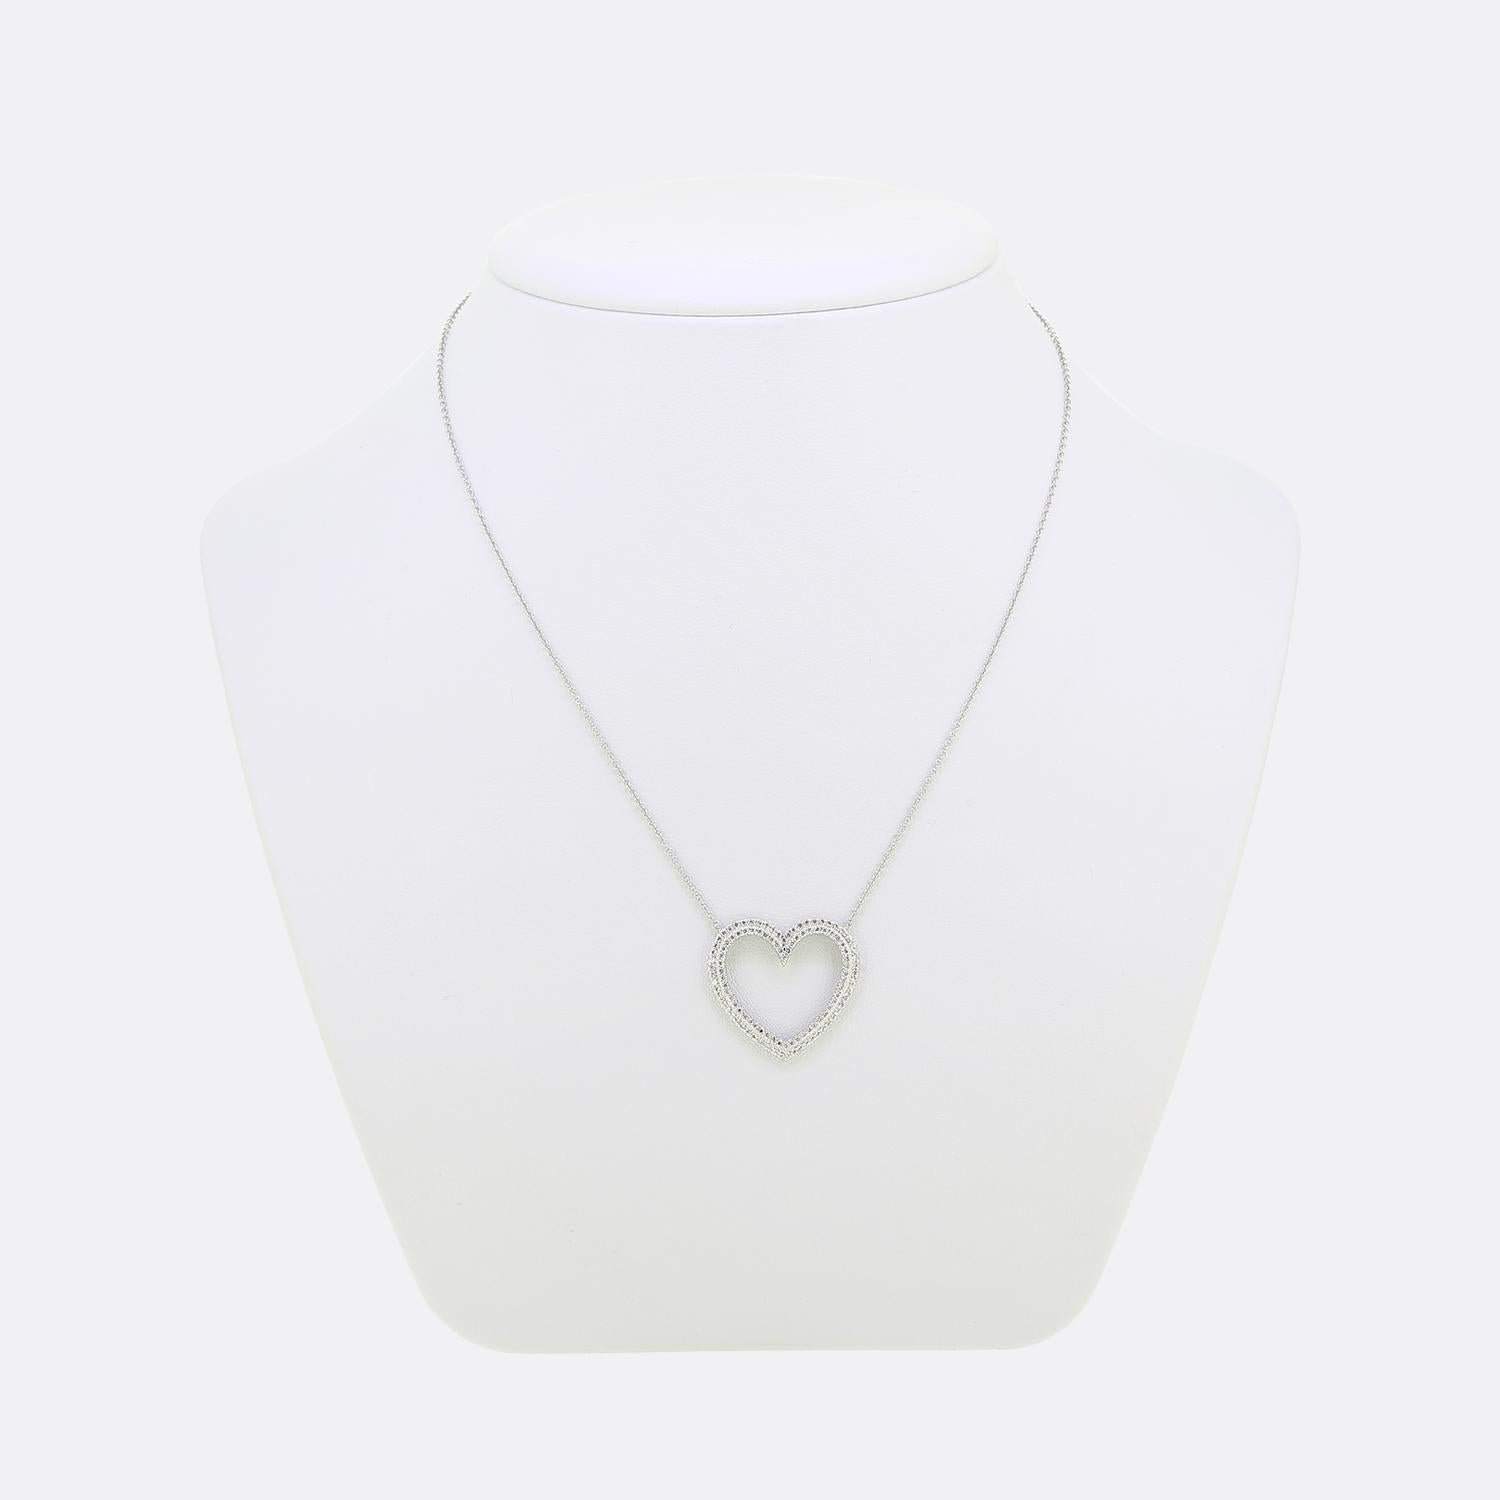 Hier haben wir eine wunderschöne Halskette des weltbekannten Luxusschmuckdesigners Tiffany & Co. Diese Halskette wurde aus Platin gefertigt. Der Anhänger zeigt ein offenes Herzdesign, das mit zwei Lagen runder Diamanten im Brillantschliff verziert